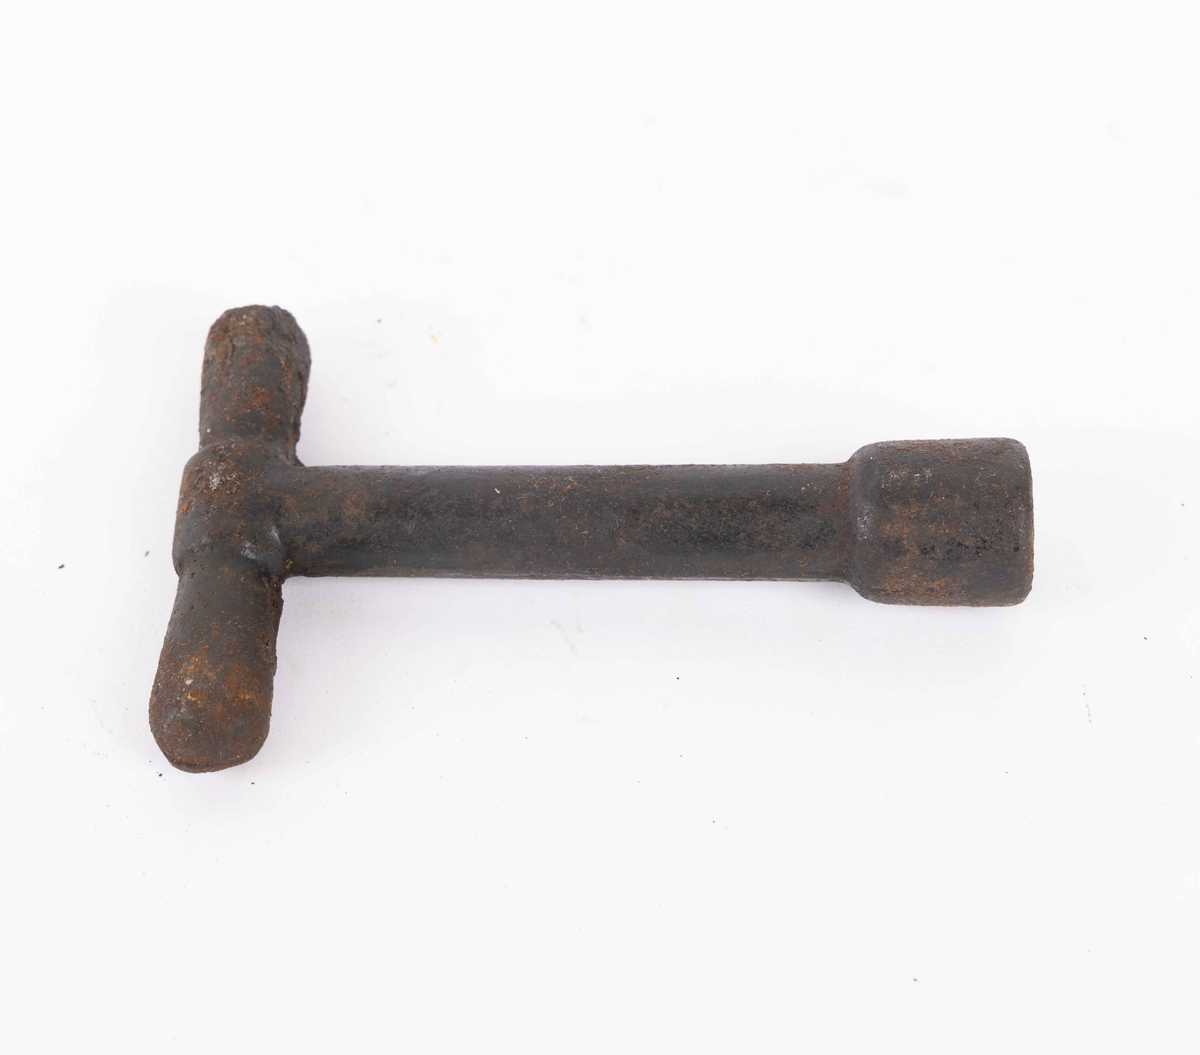 T-formet universalnøkkel av jern med rundt grep. Den kan brukes til bolt, mutter eller lignende som er firkanta.